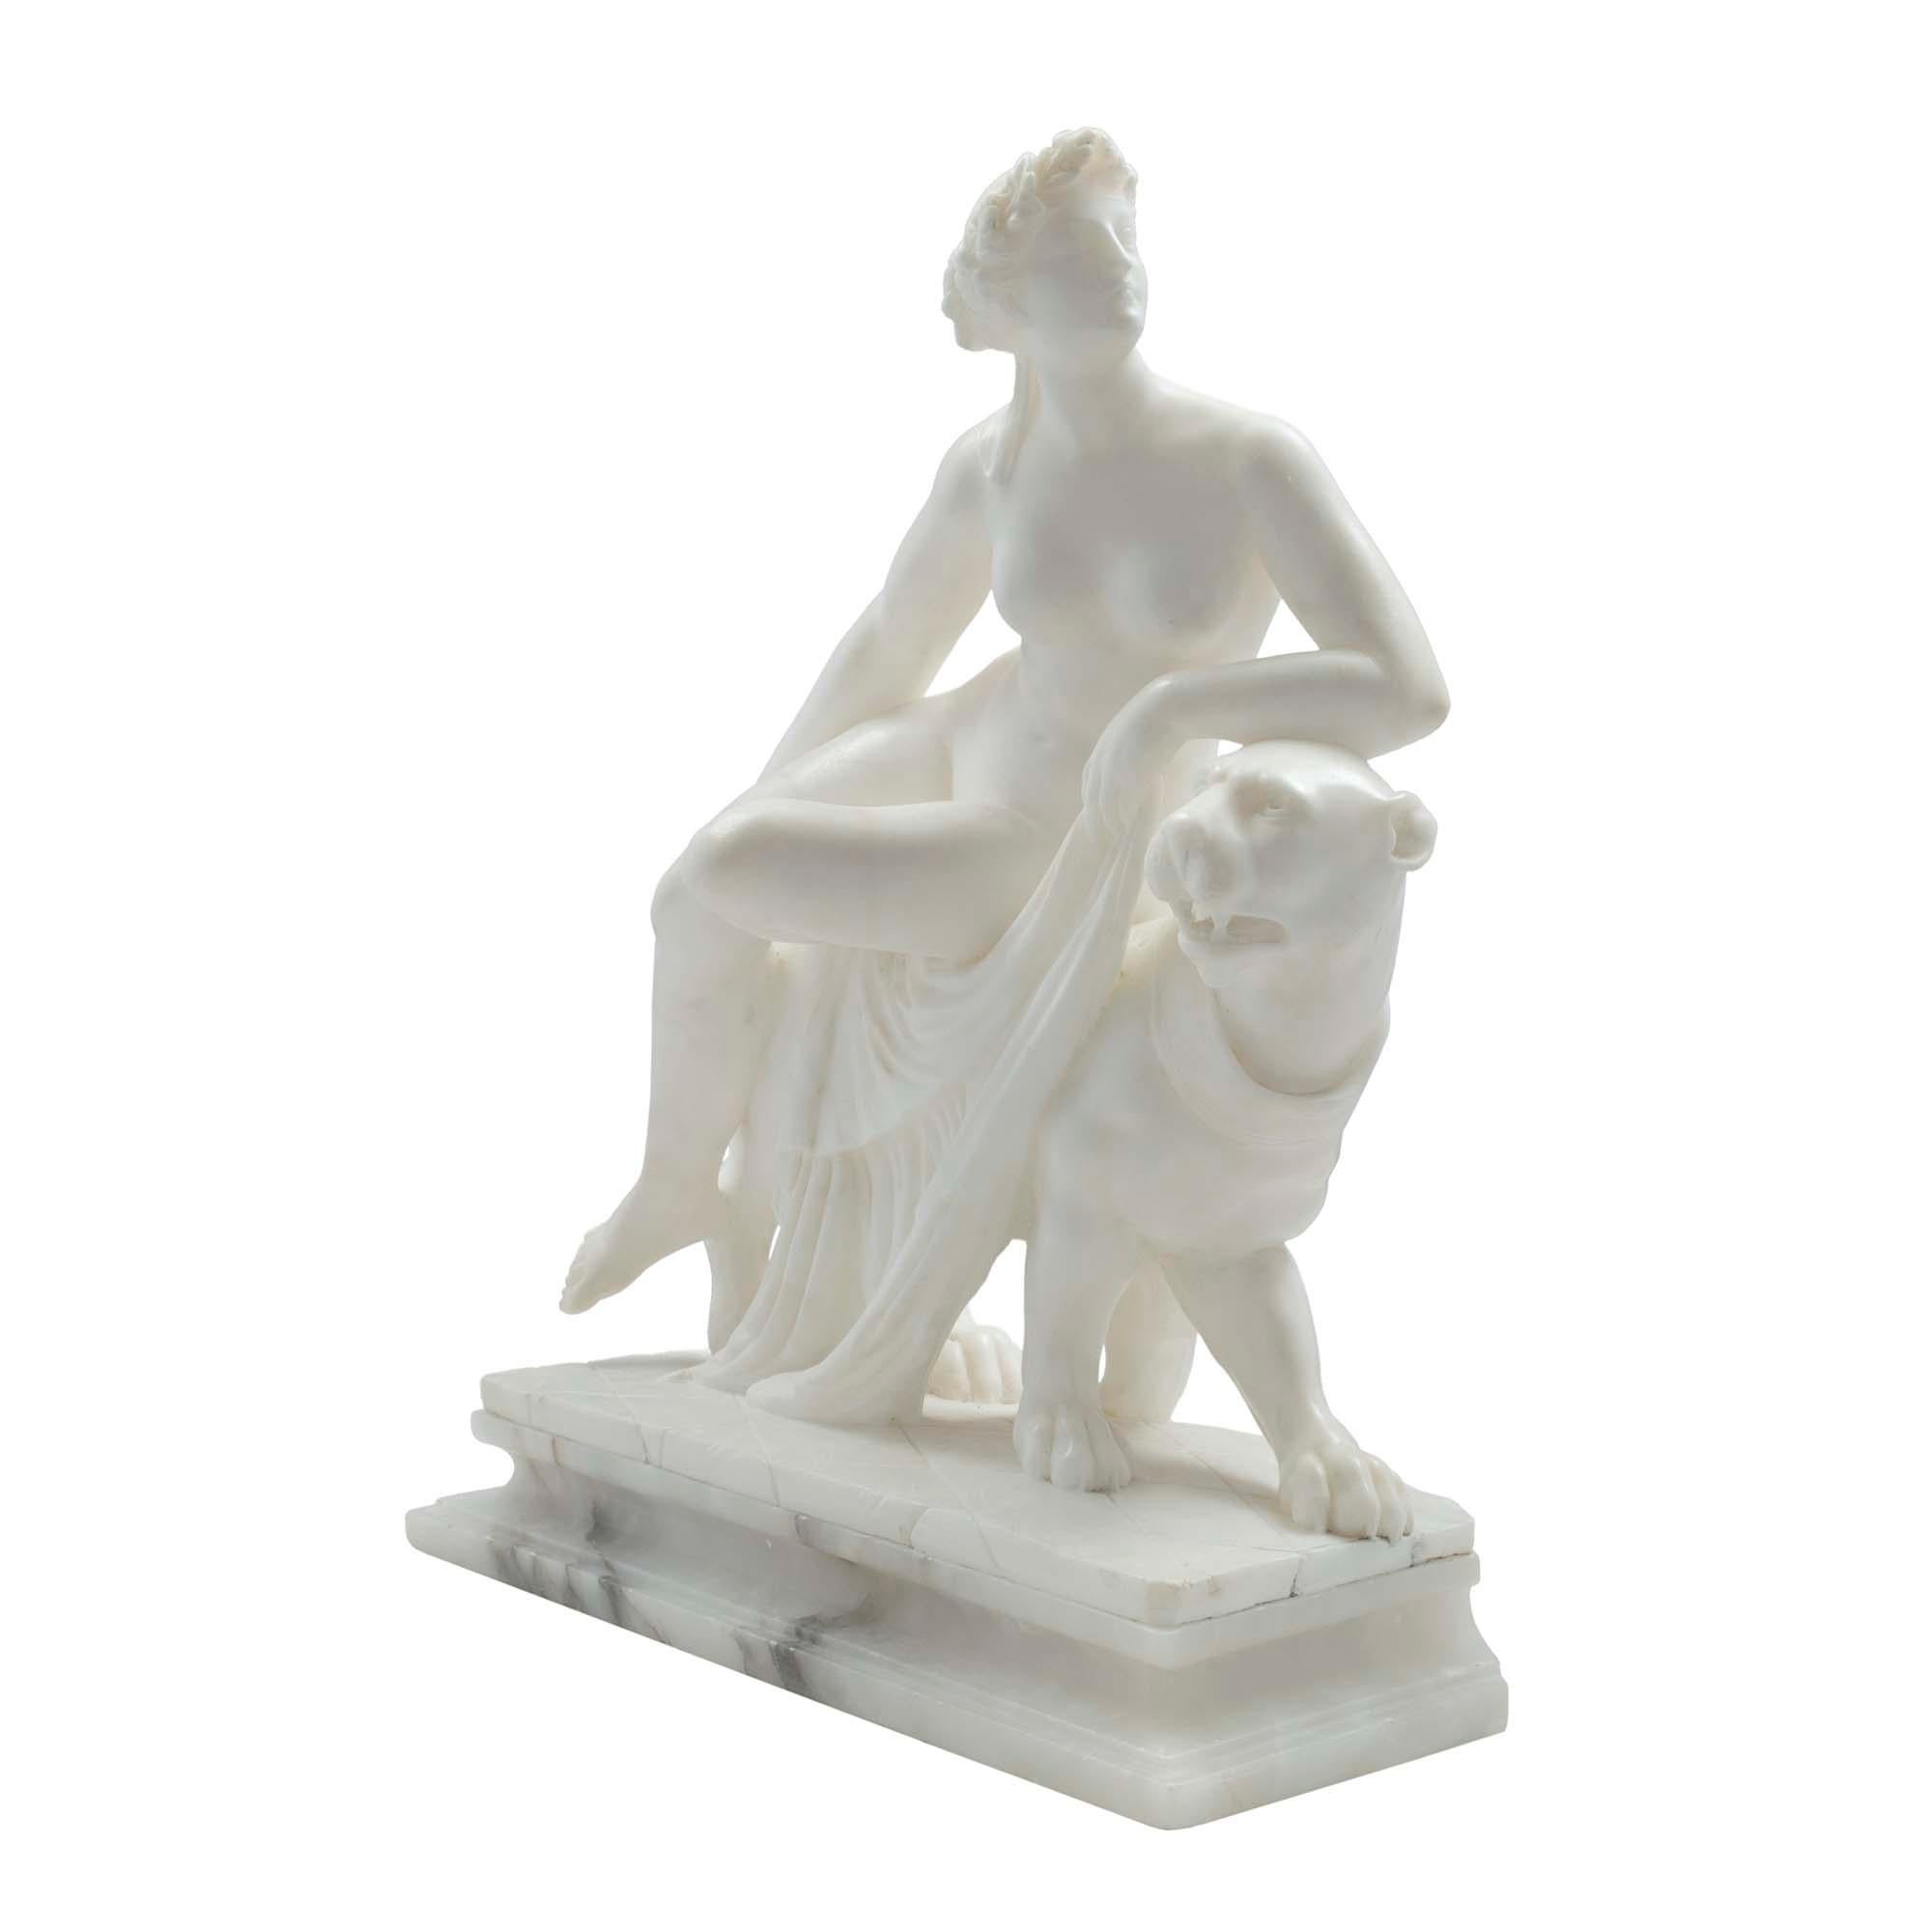 Eine elegante und dekorative italienische Alabaster- und Marmorstatue aus dem 19. Jahrhundert, die die griechische Göttin Ariadne auf ihrem Panther sitzend darstellt. Sie blickt nach links, während ihr Ellbogen auf dem Kopf ihres Panthers ruht, und